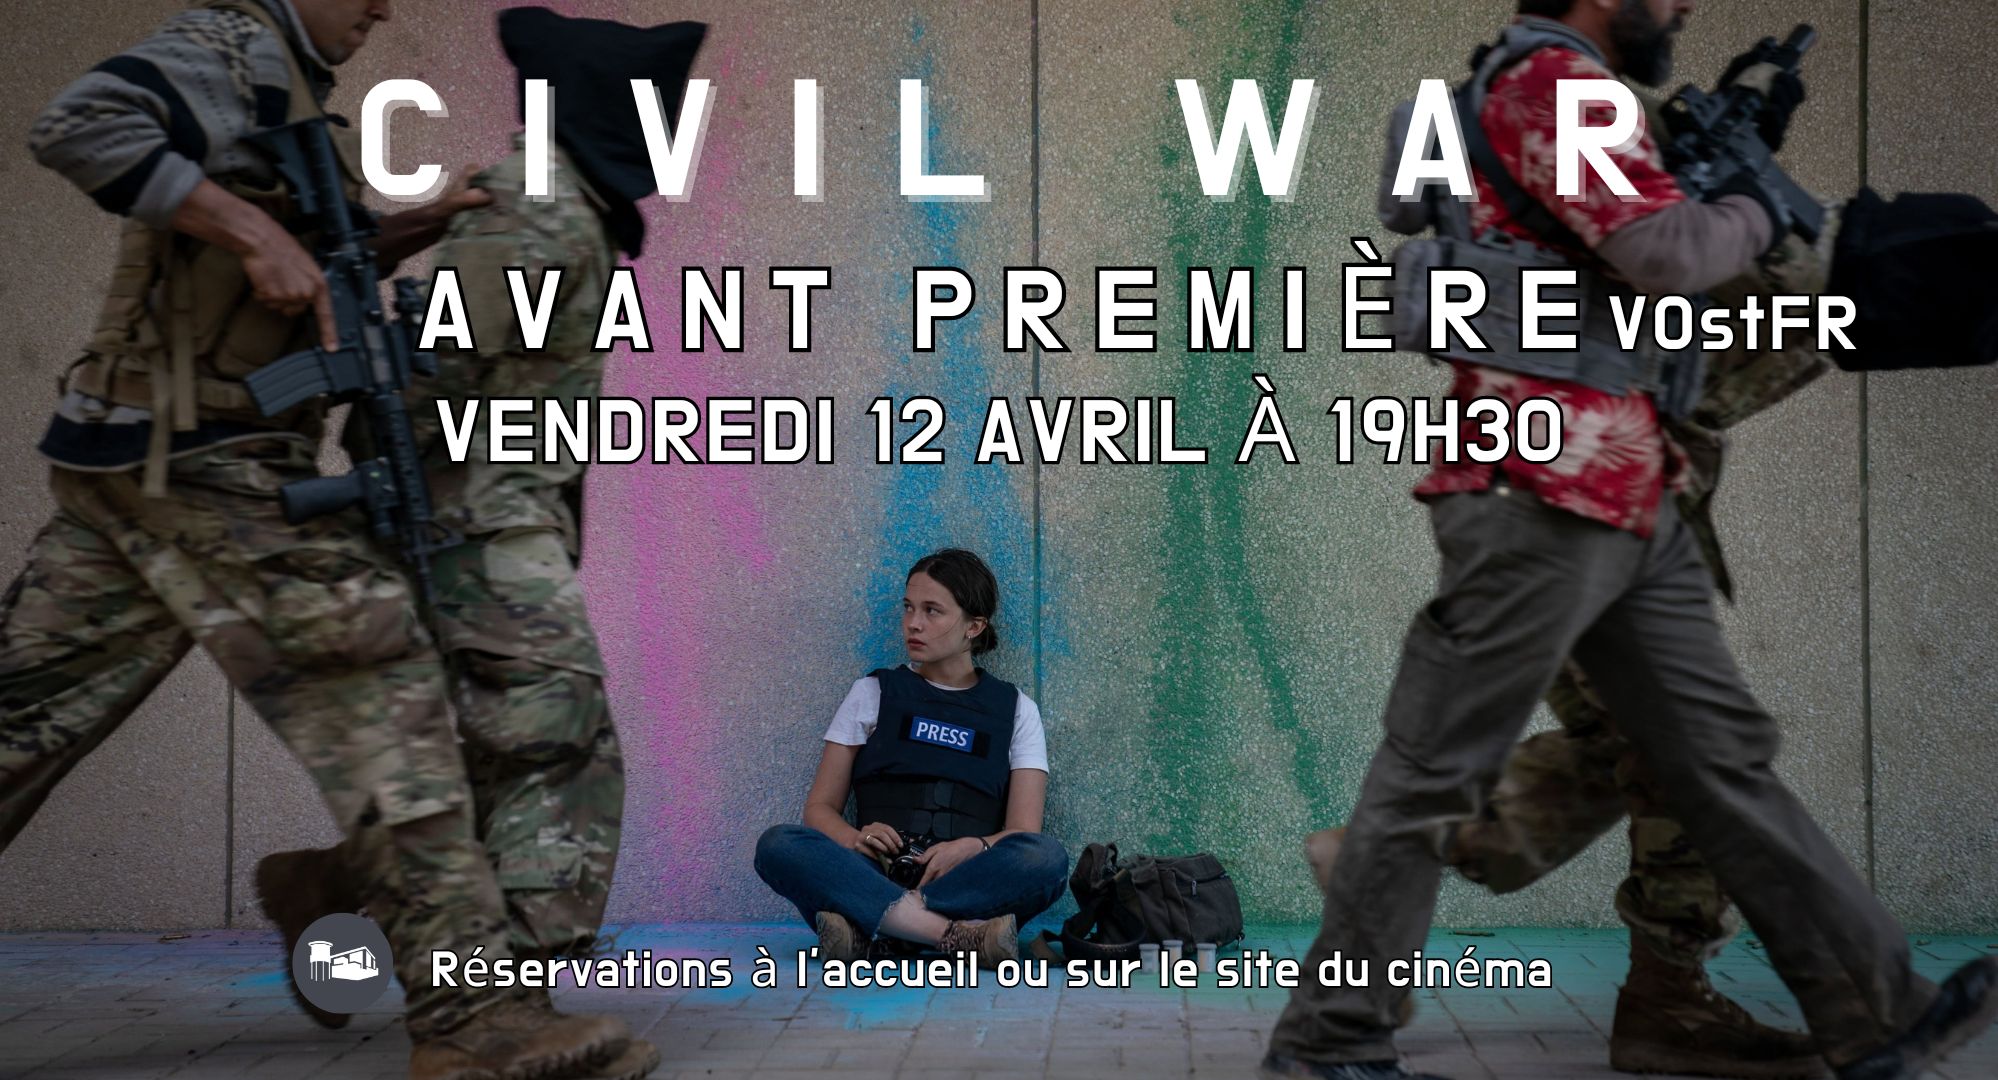 AVANT-PREMIÈRE - CIVIL WAR - le ven 12 avril à 19h30 en VOstFR